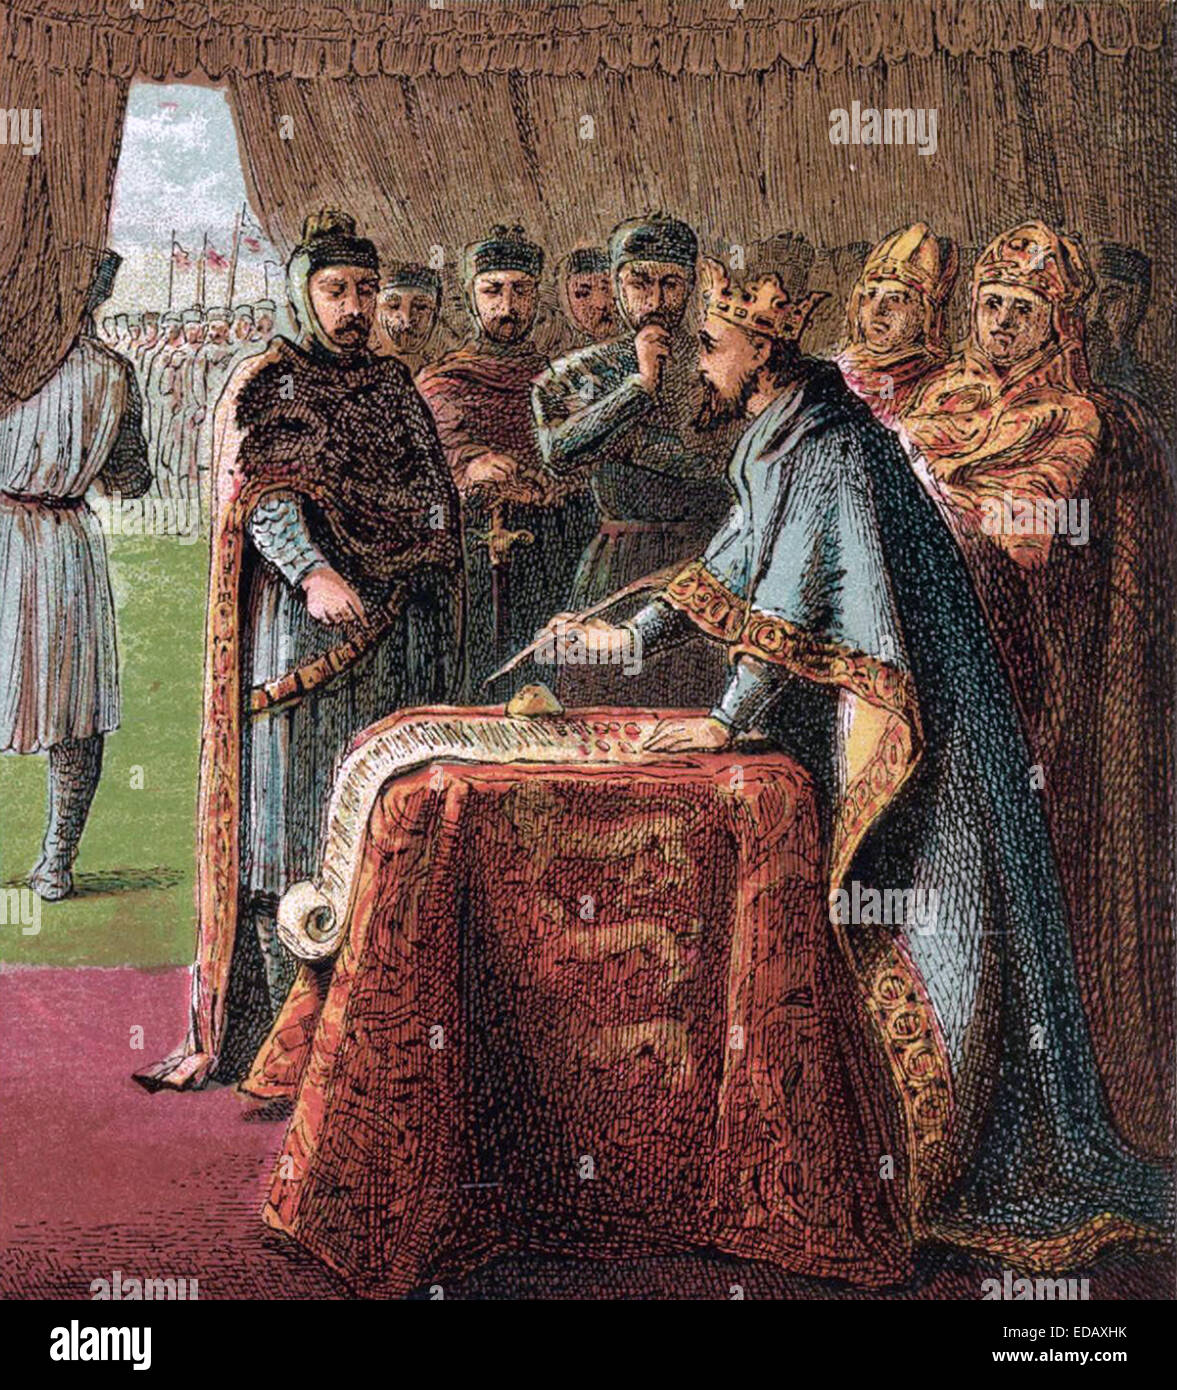 CARTA MAGNA el Rey Juan firma la carta en una ilustración del siglo XIX. Foto de stock